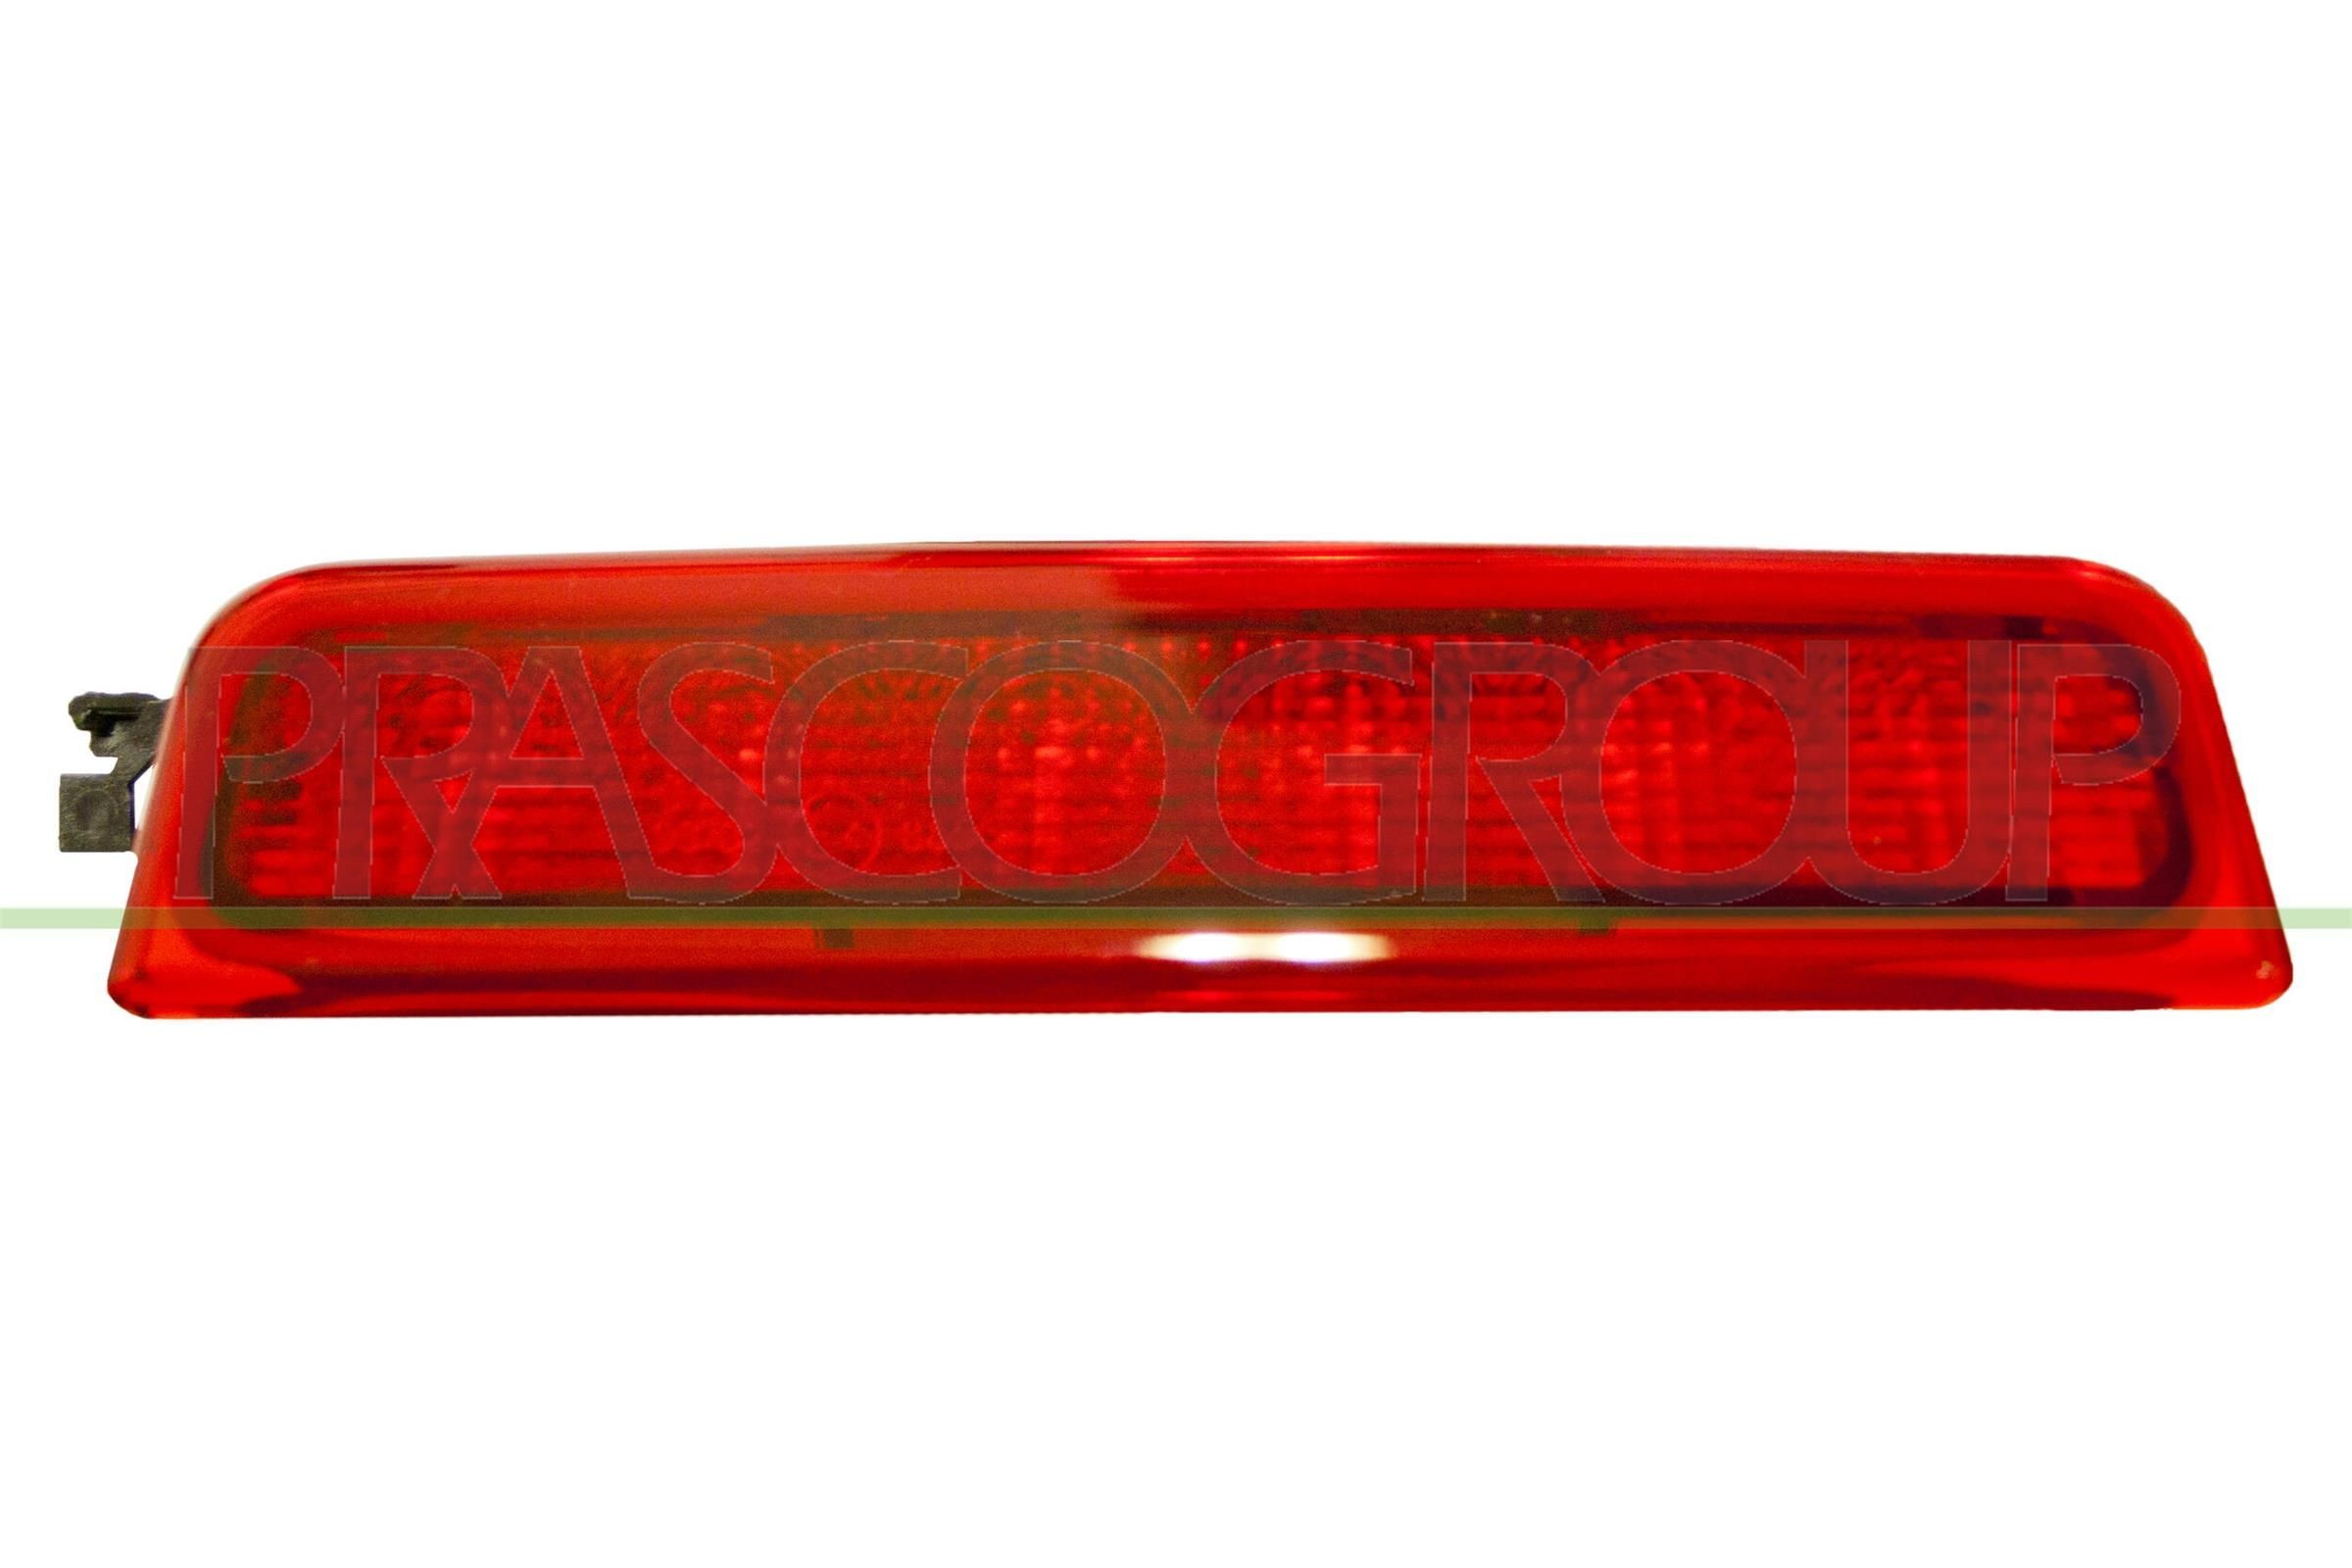 Zusatzbremsleuchte für VW CADDY LED und Halogen günstig kaufen ▷ AUTODOC- Onlineshop